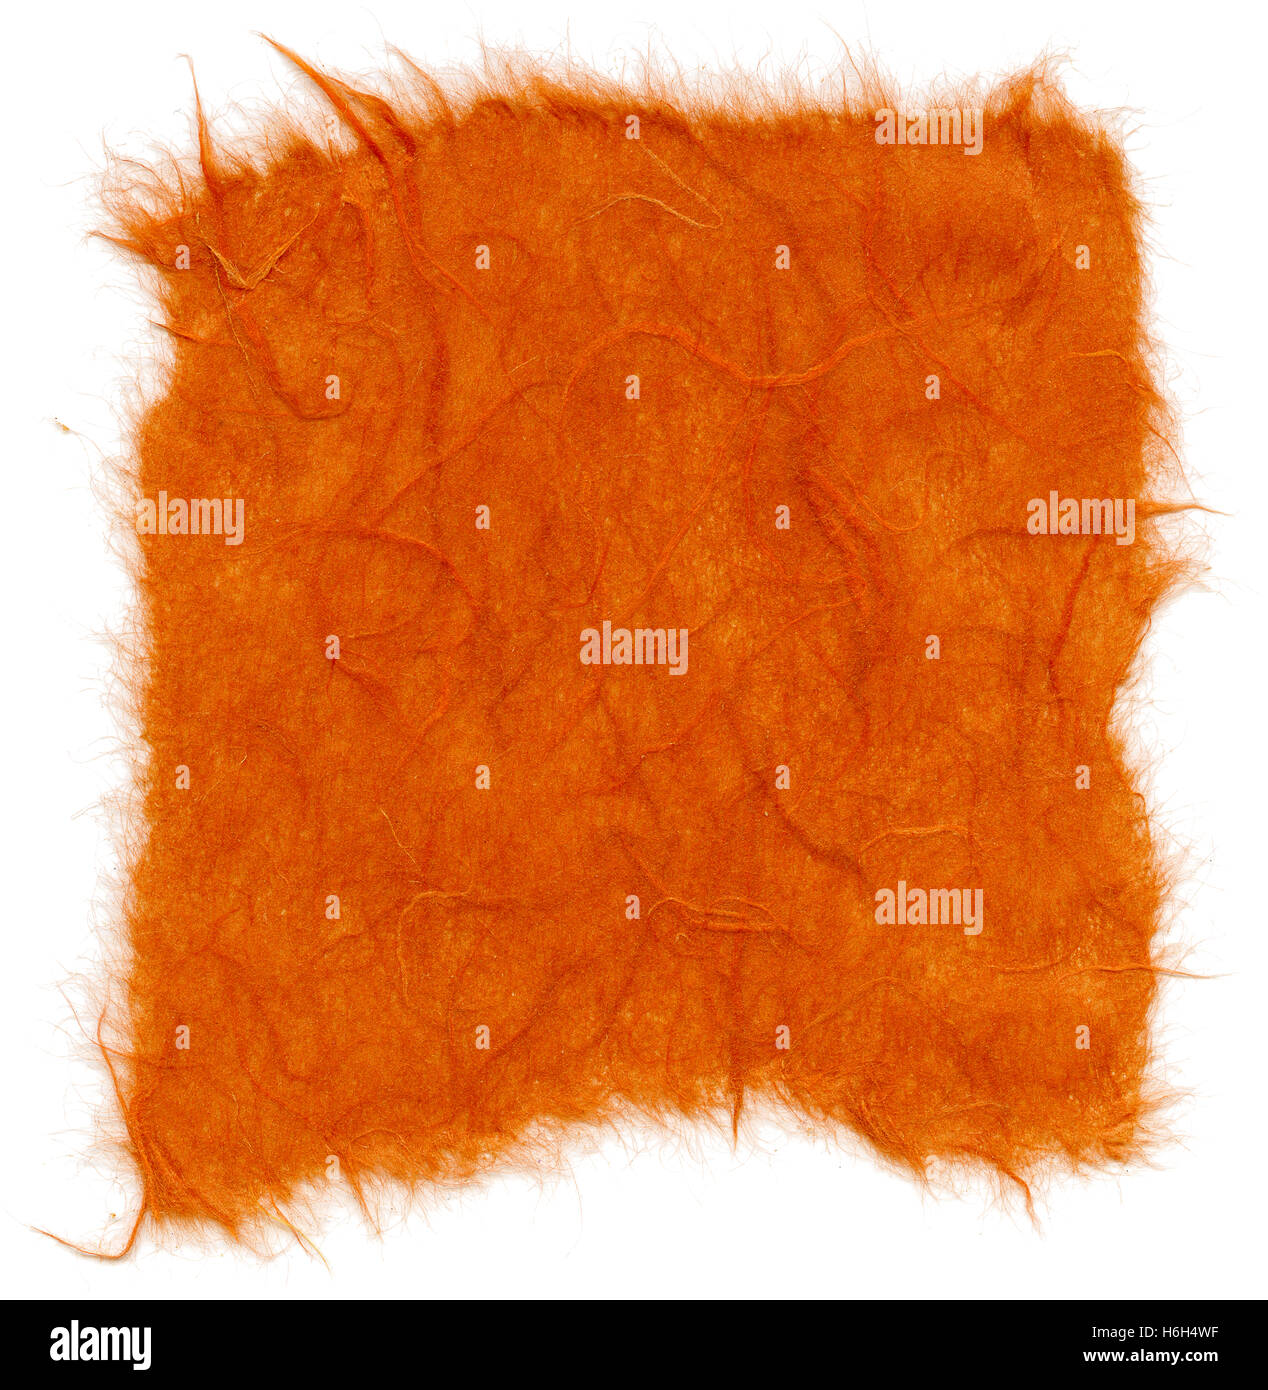 Textur des orange Reispapier mit zerrissenen Kanten. Isoliert auf weißem Hintergrund. Mit 2400dpi mit einem professionellen Scanner gescannt. Stockfoto